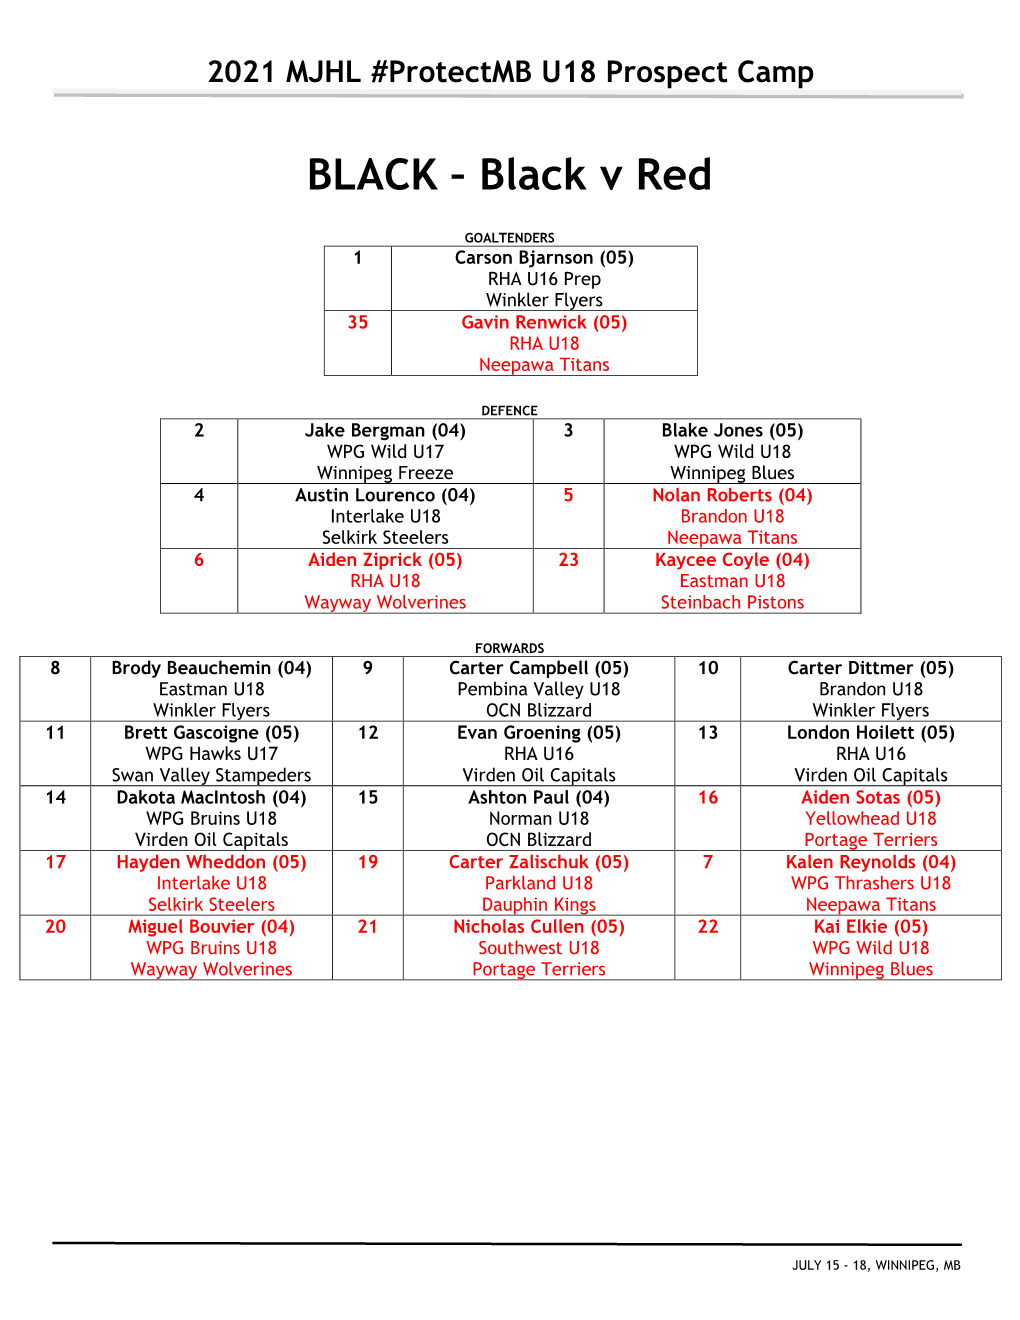 BLACK – Black V Red